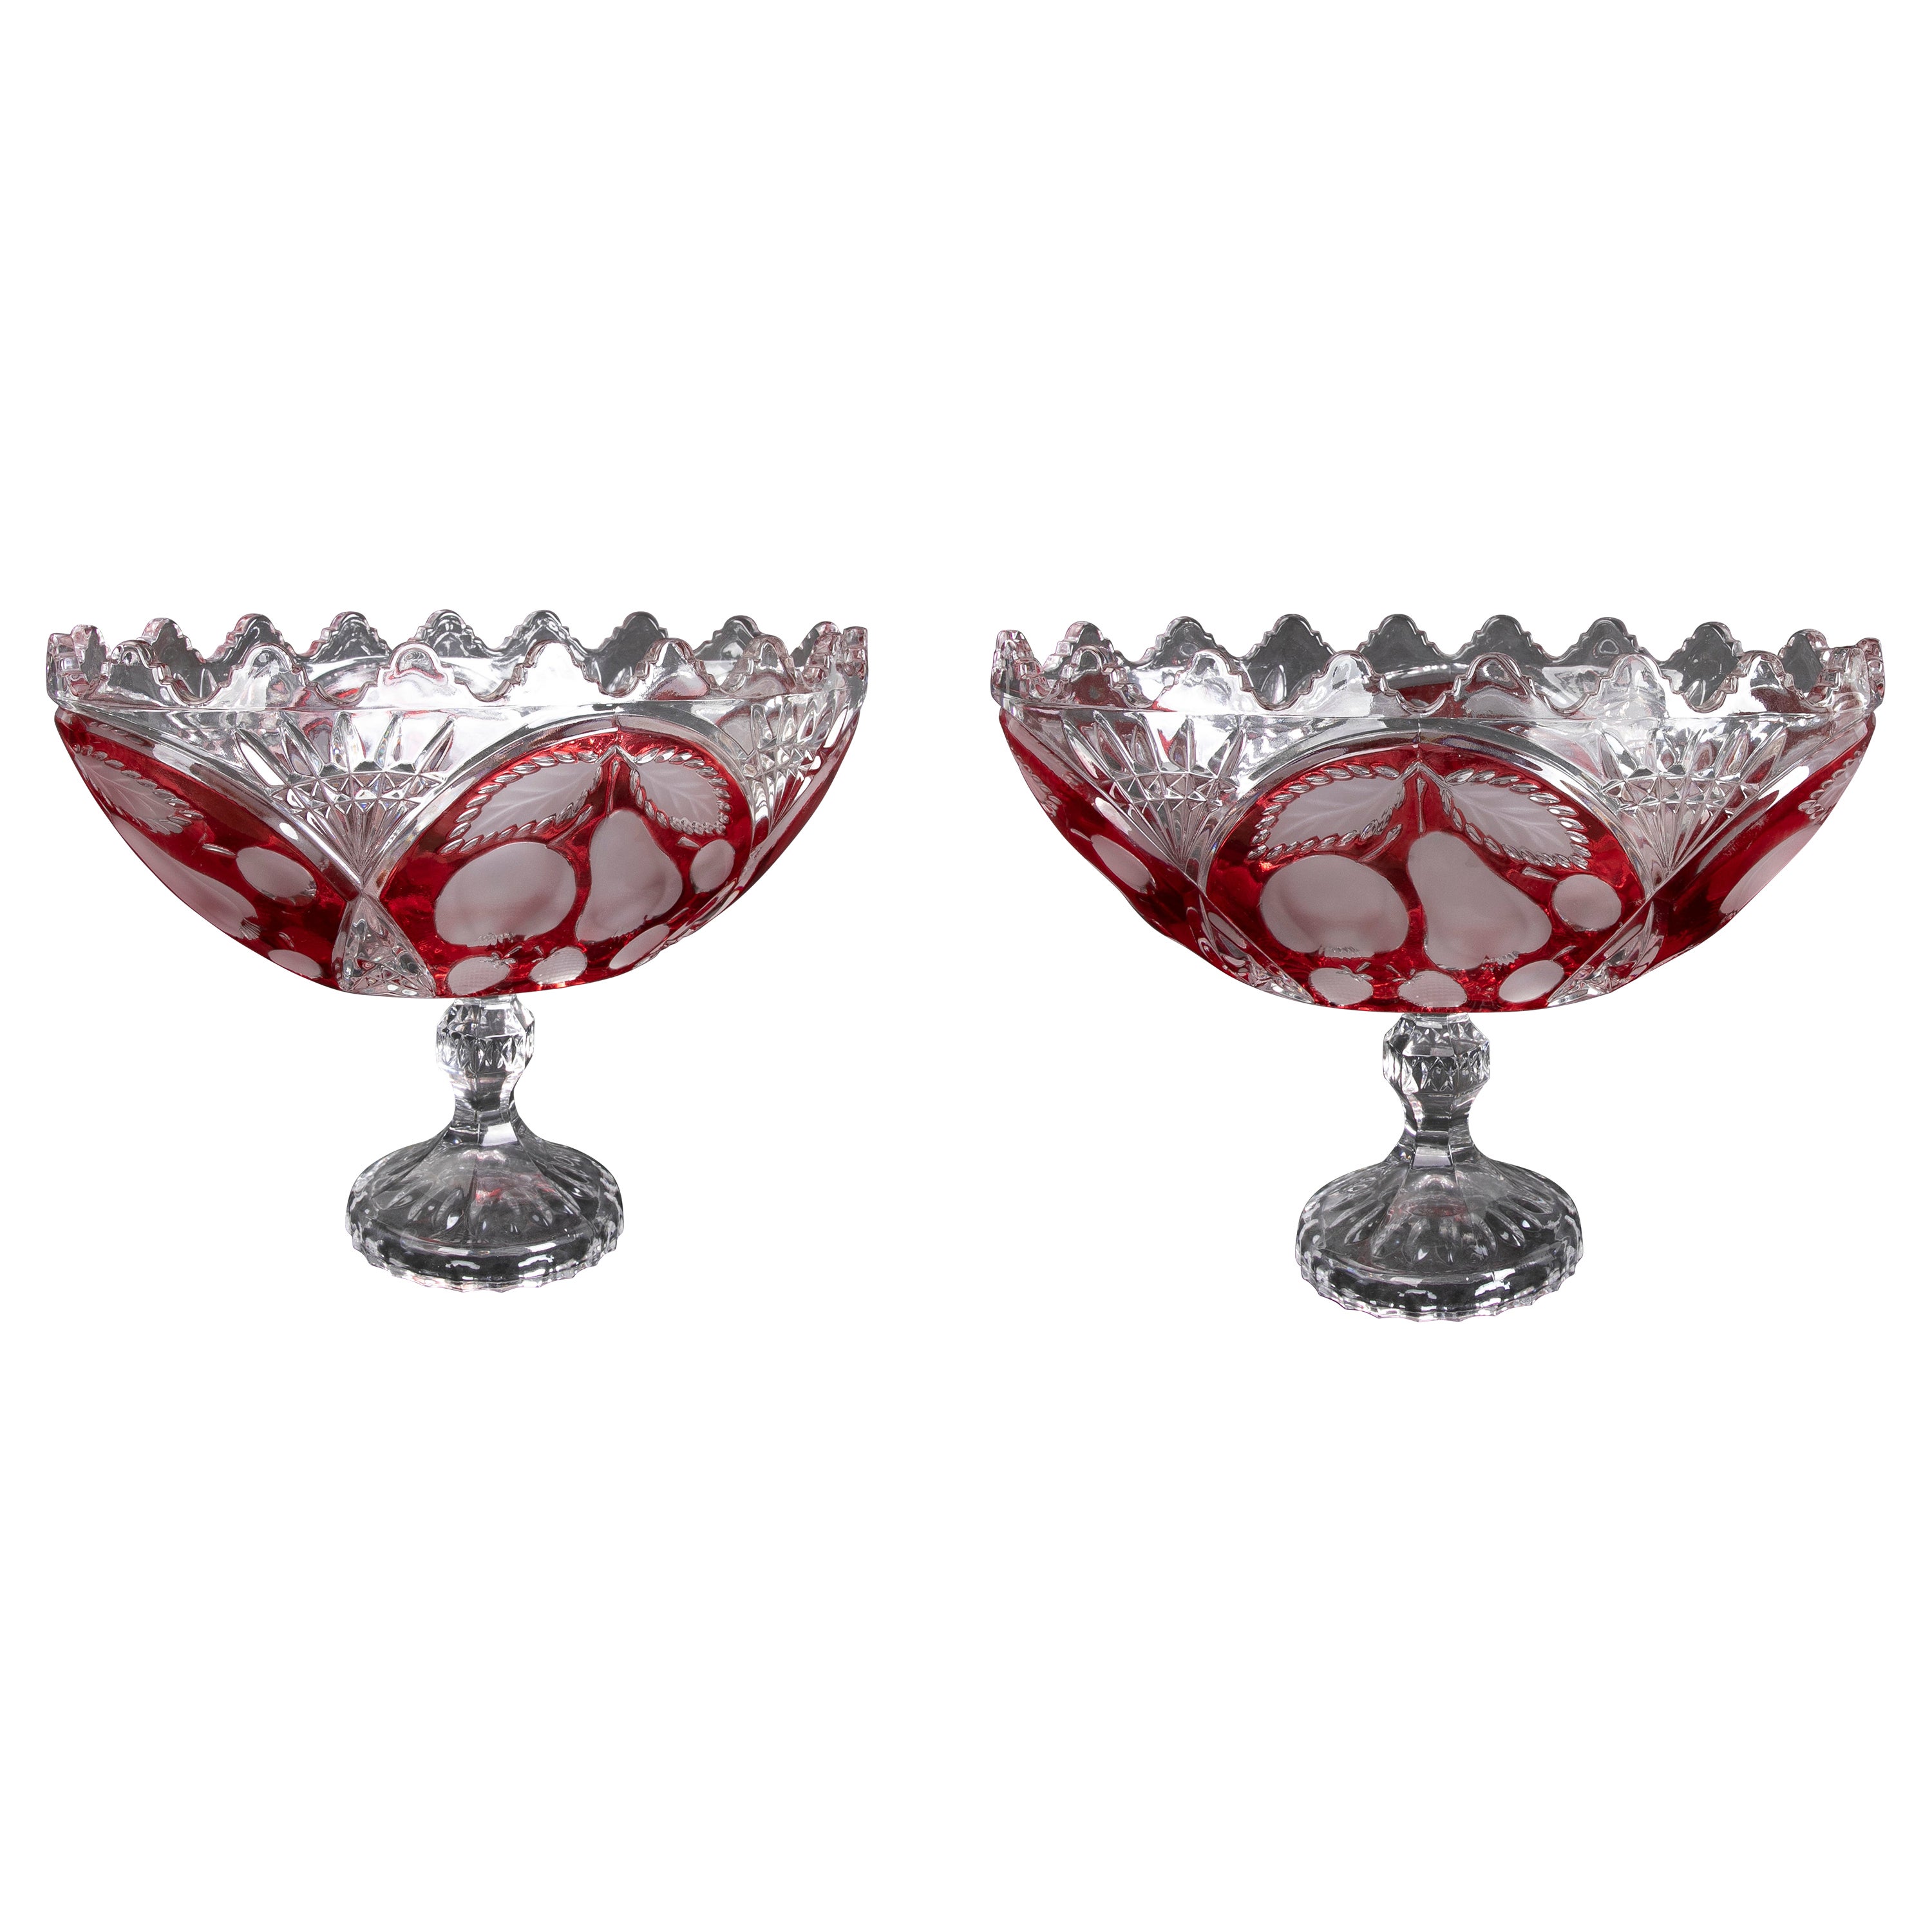 Paire de vases ovales en cristal sculptés à la main avec décoration rouge